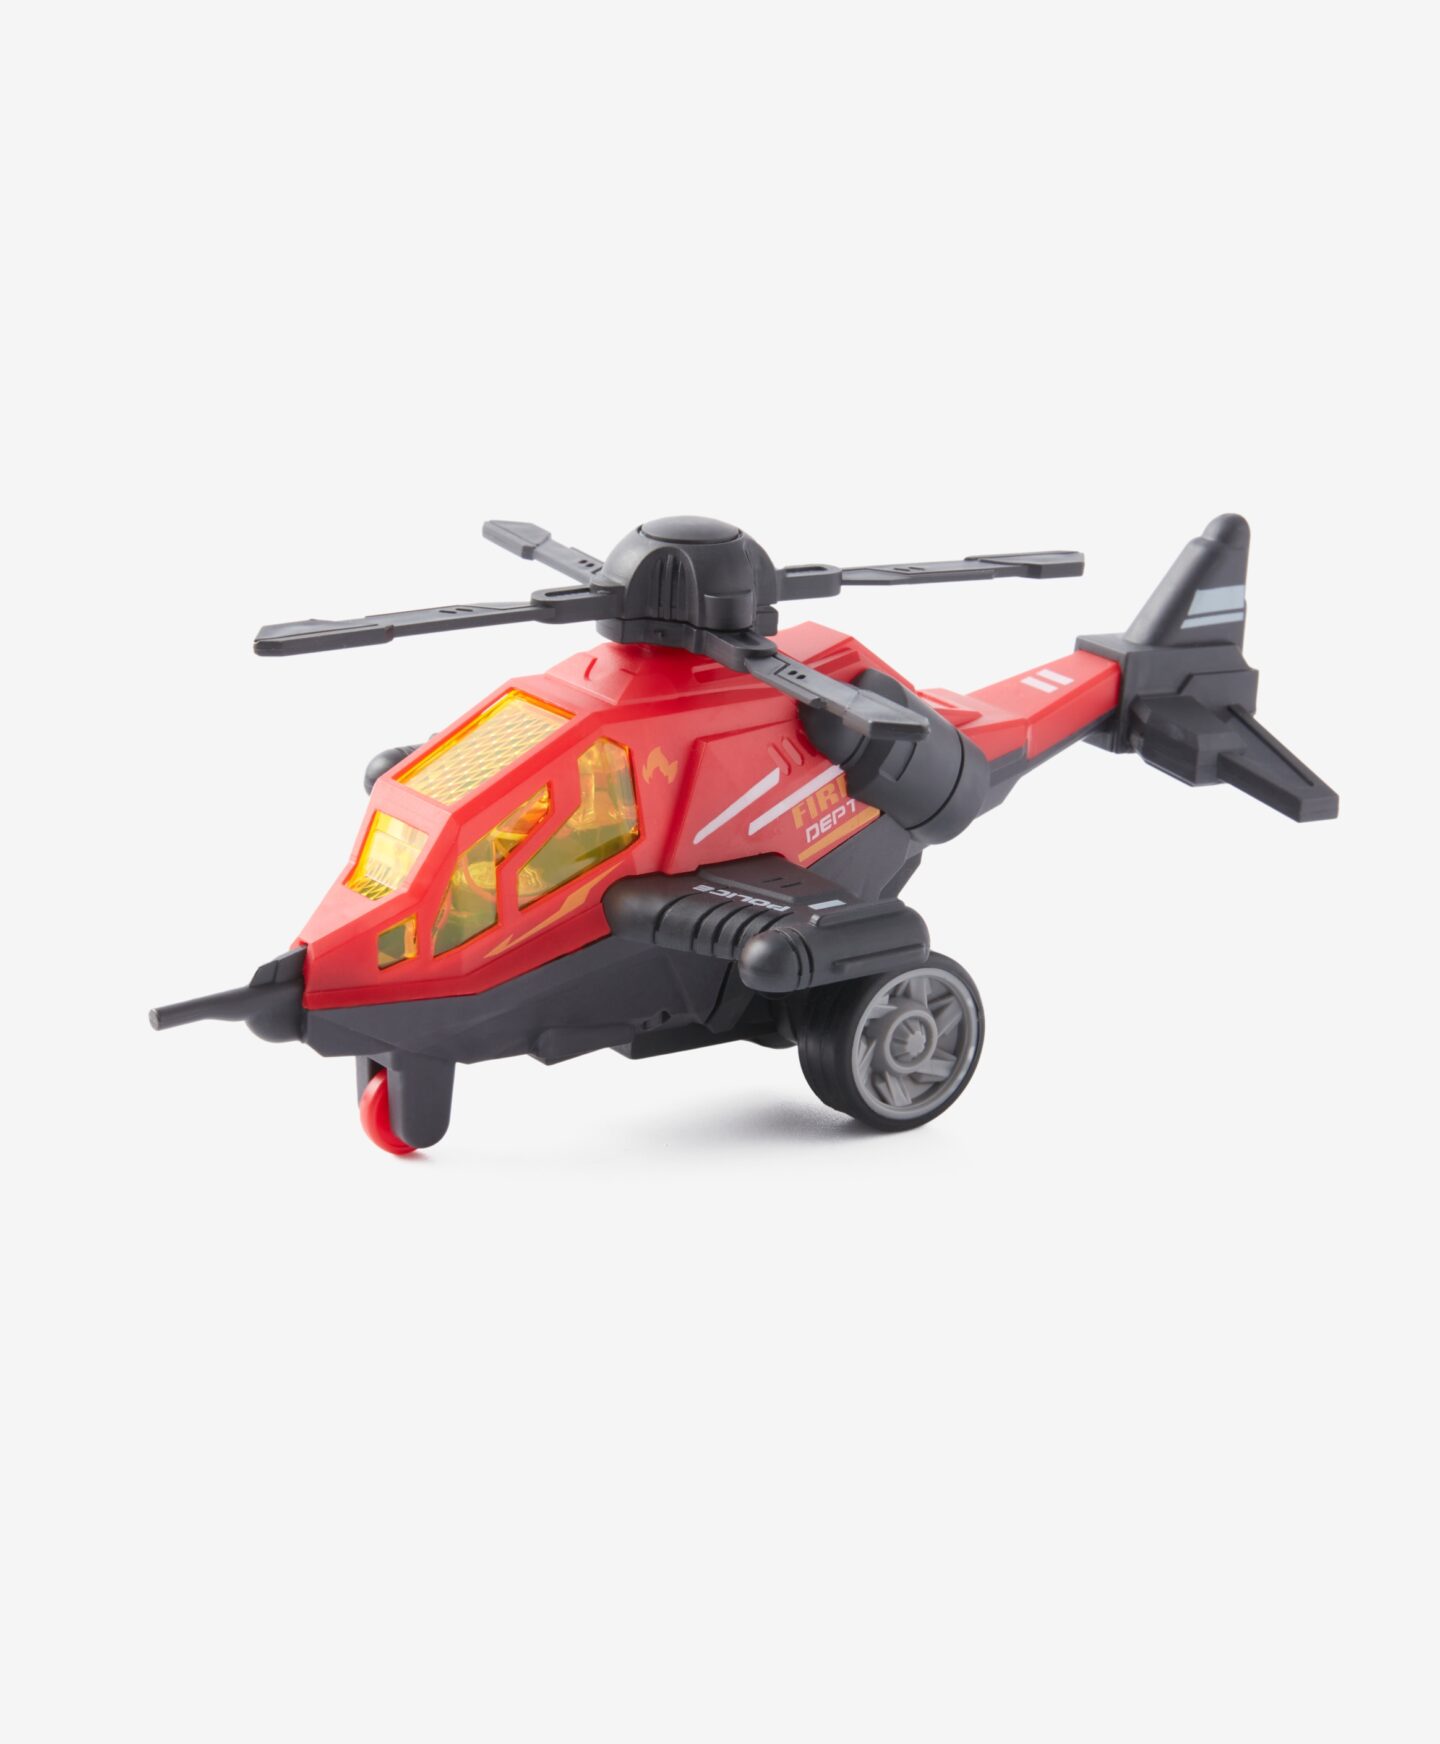 Ελικόπτερο με ήχους και φώτα, κόκκινο, 20 x 13,5 x 8,5 cm